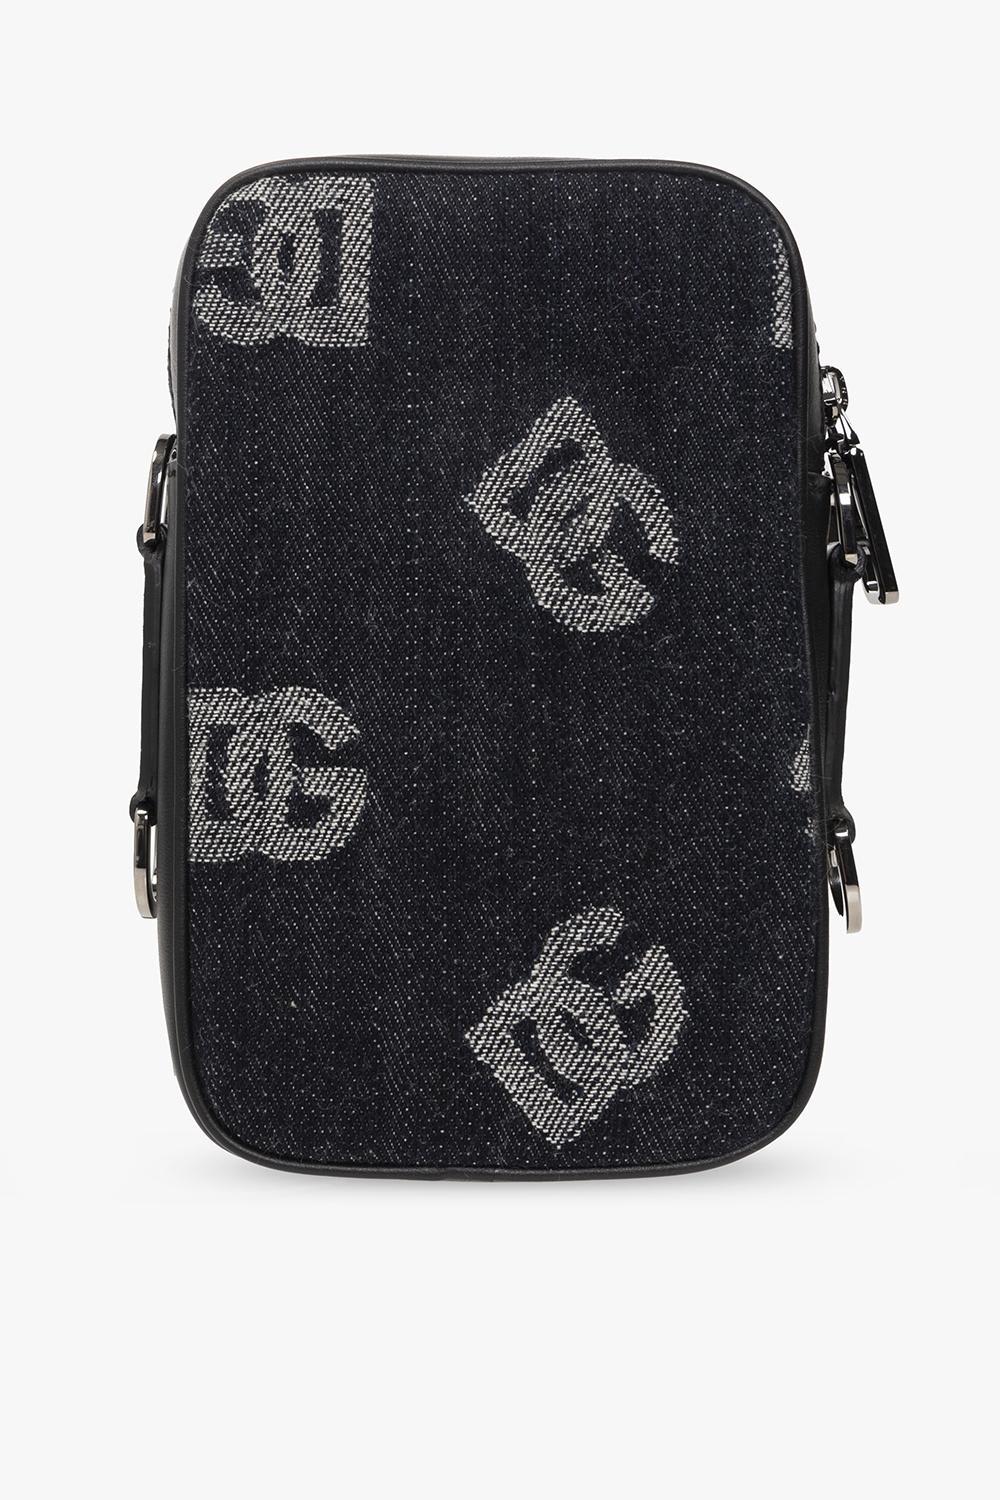 Dolce & Gabbana Monogrammed Shoulder Bag in Black for Men | Lyst UK